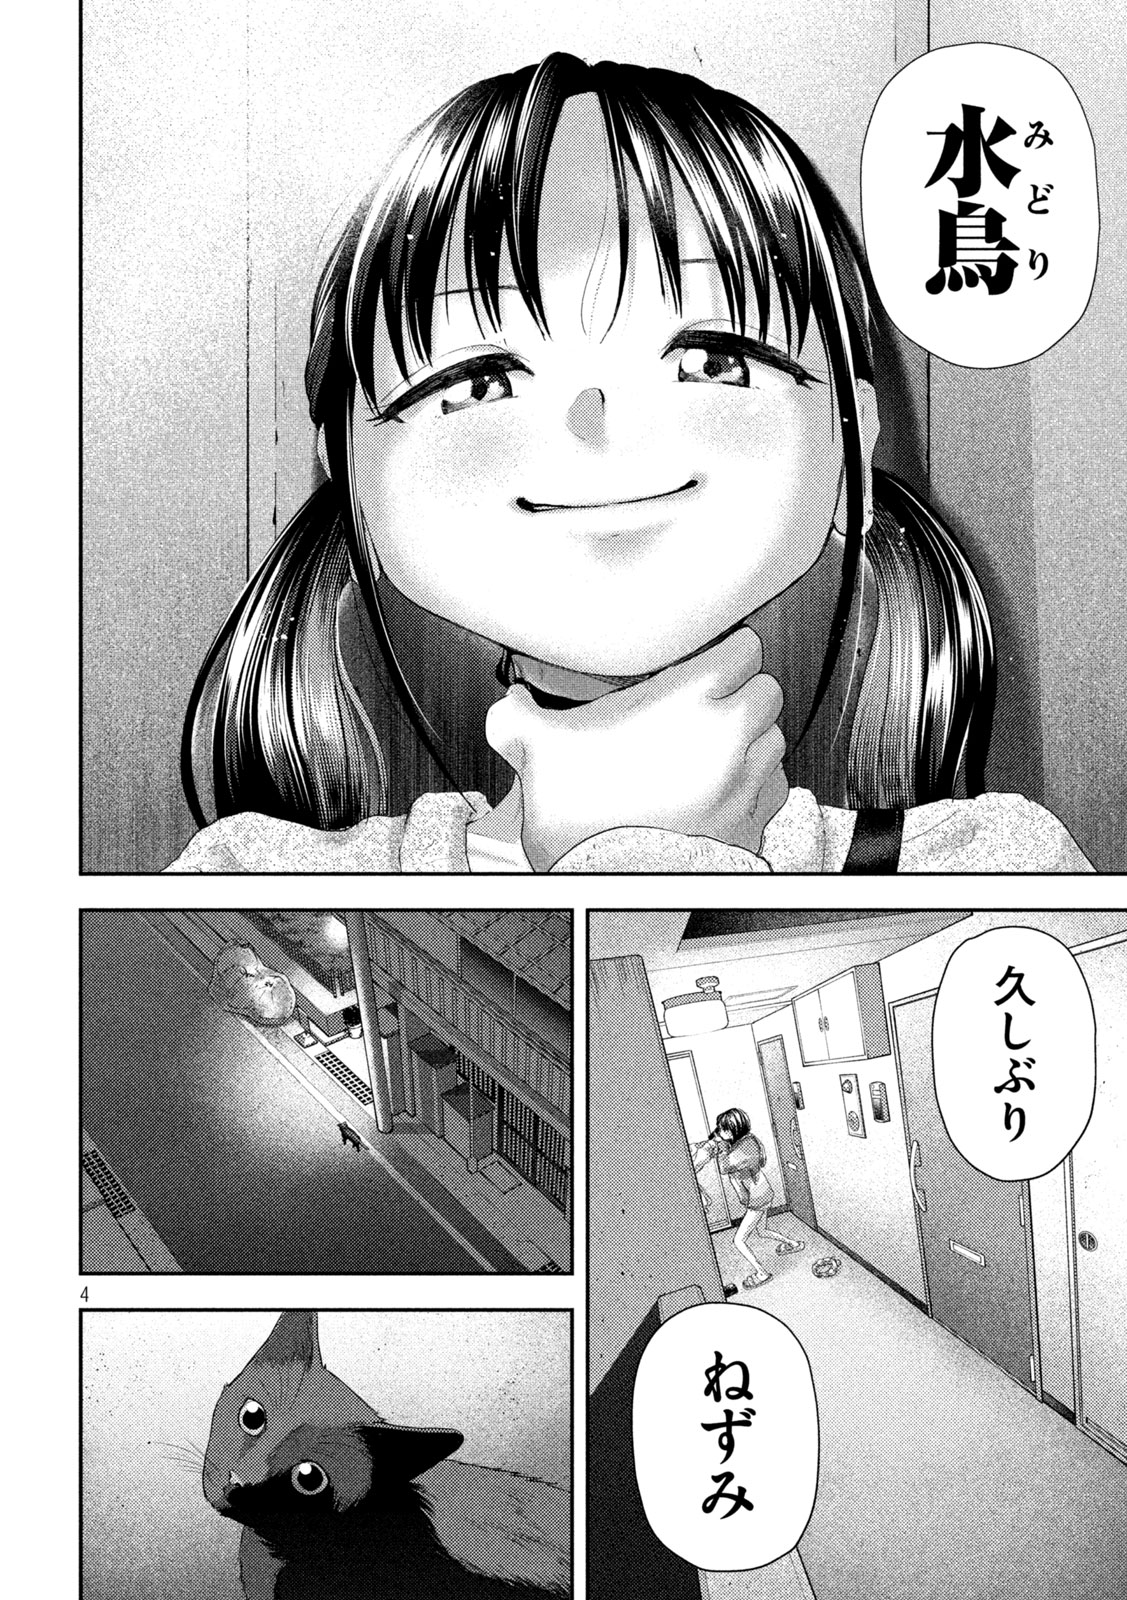 Nezumi no Koi - Chapter 30 - Page 4